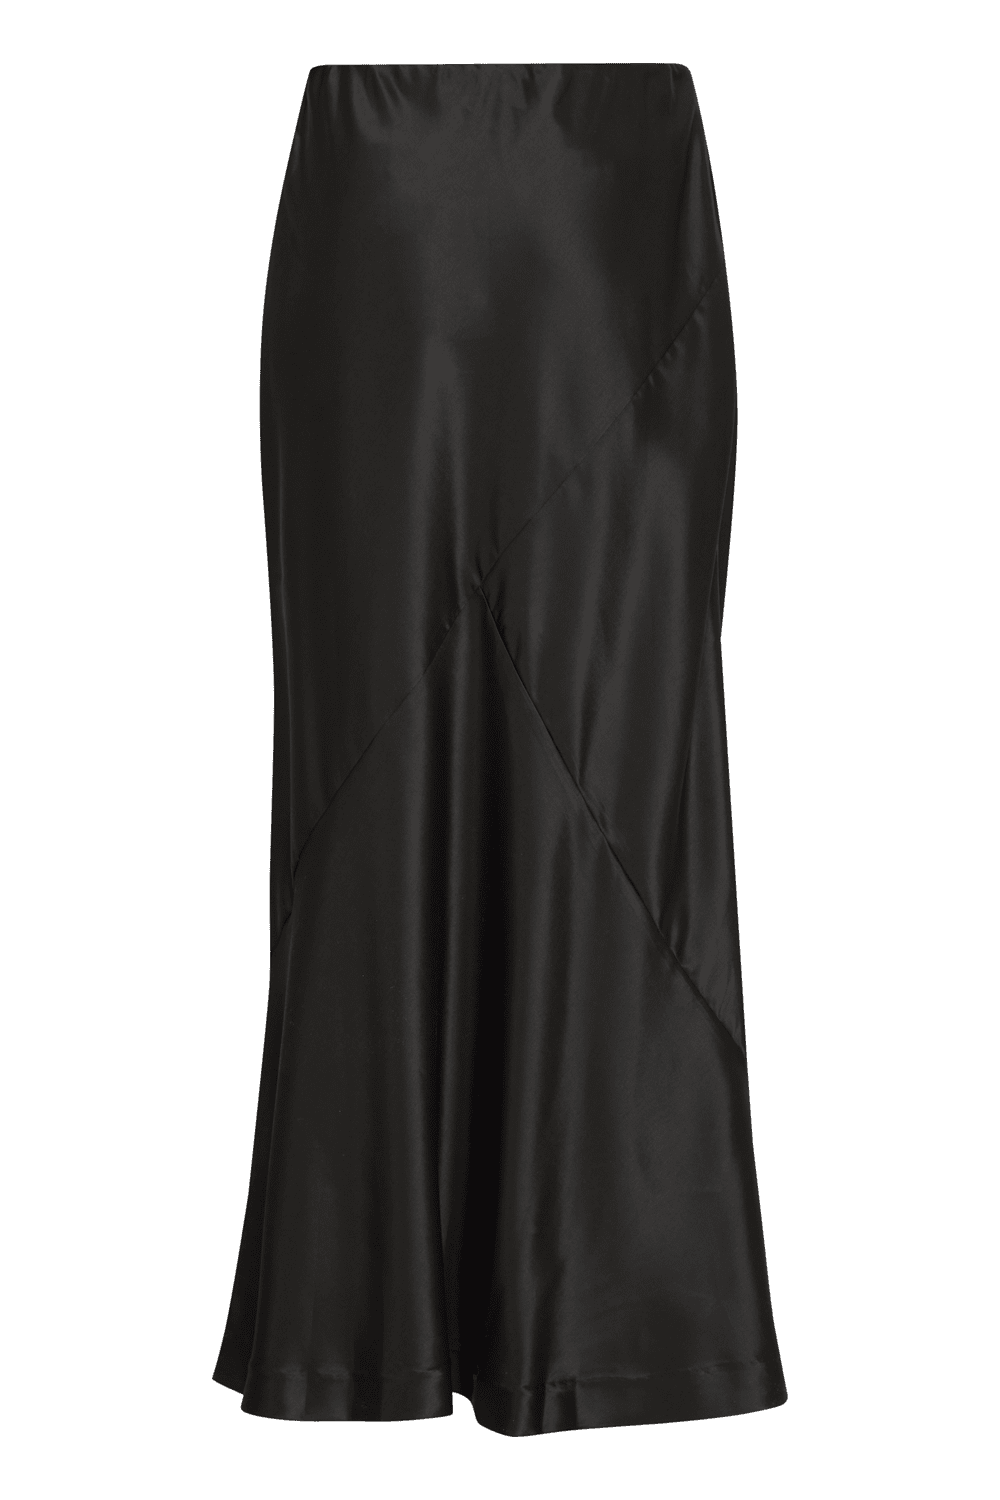 Dolora Skirt - Black